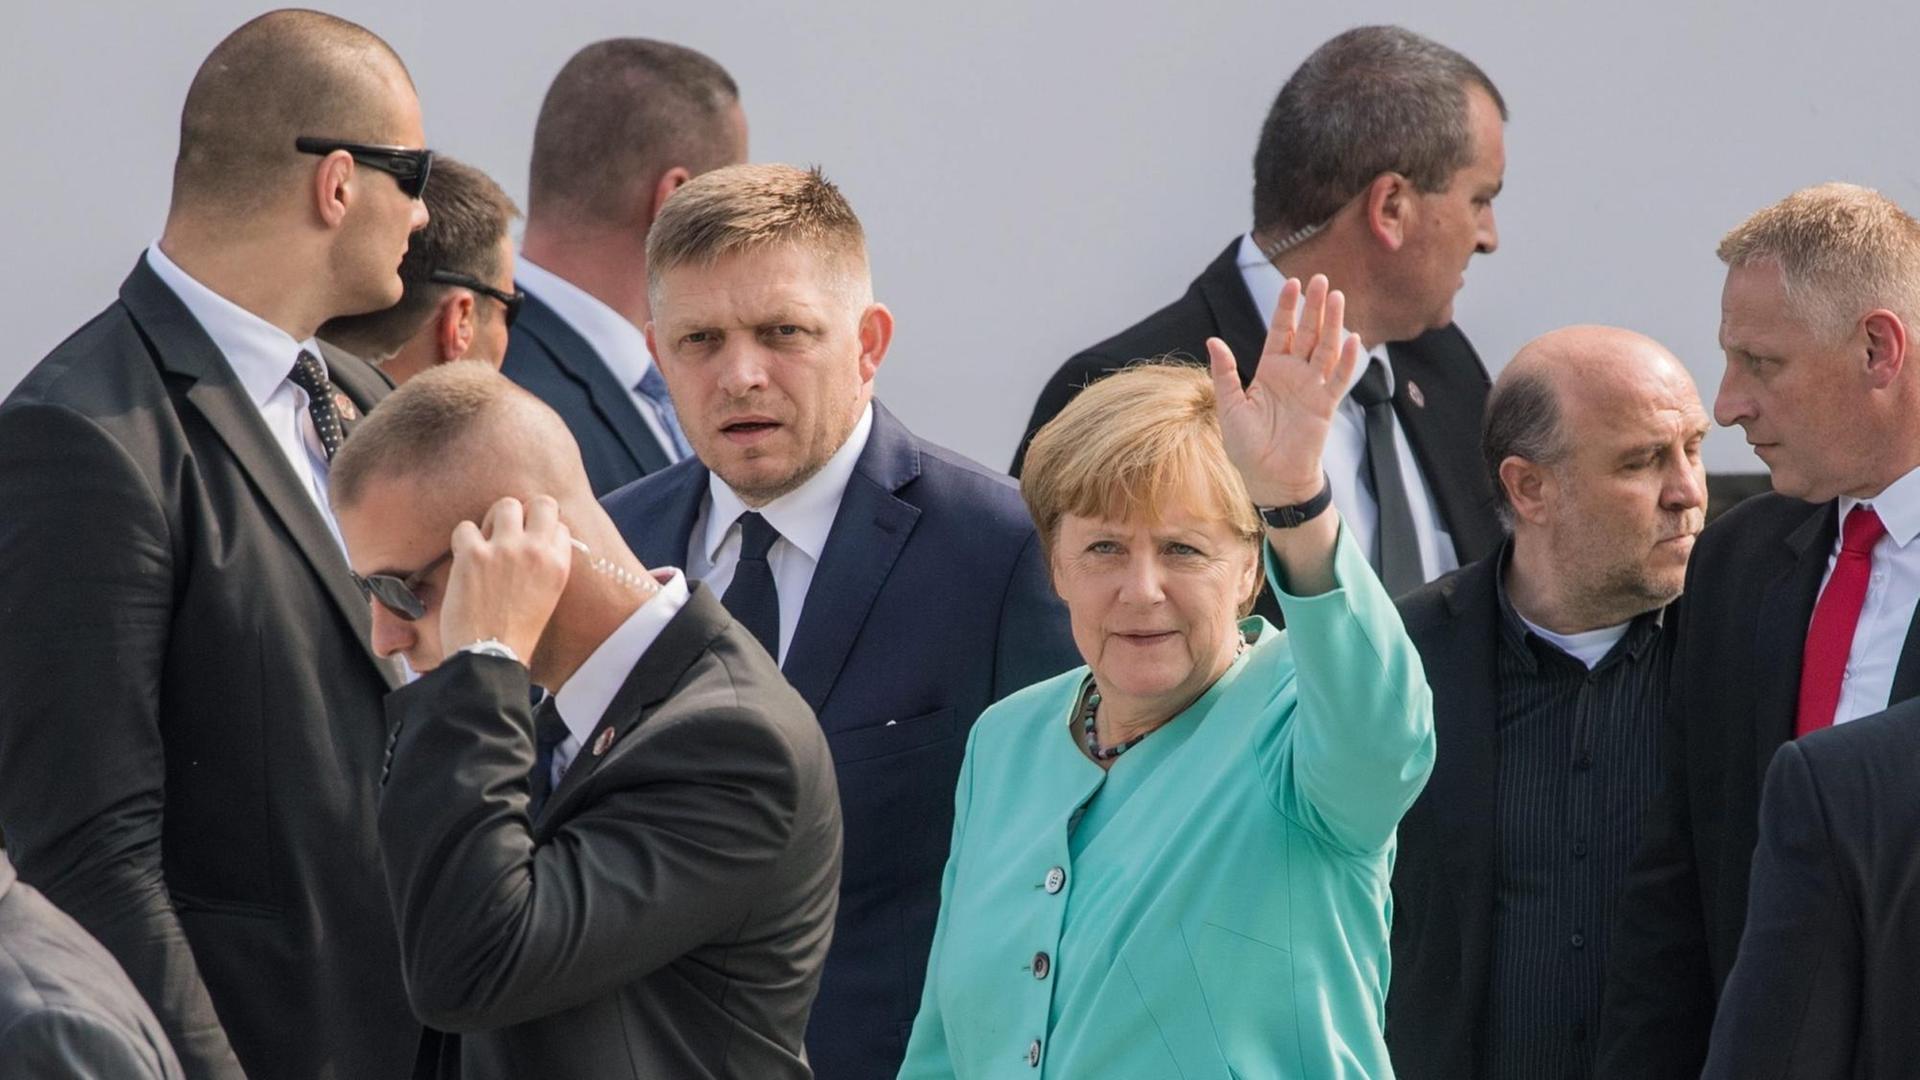 Bundeskanzlerin Merkel und der slowakische Ministerpräsident Fico sind von Sicherheitskräften umgeben. Merkel trägt einen türkisfarbenen Blazer und winkt.